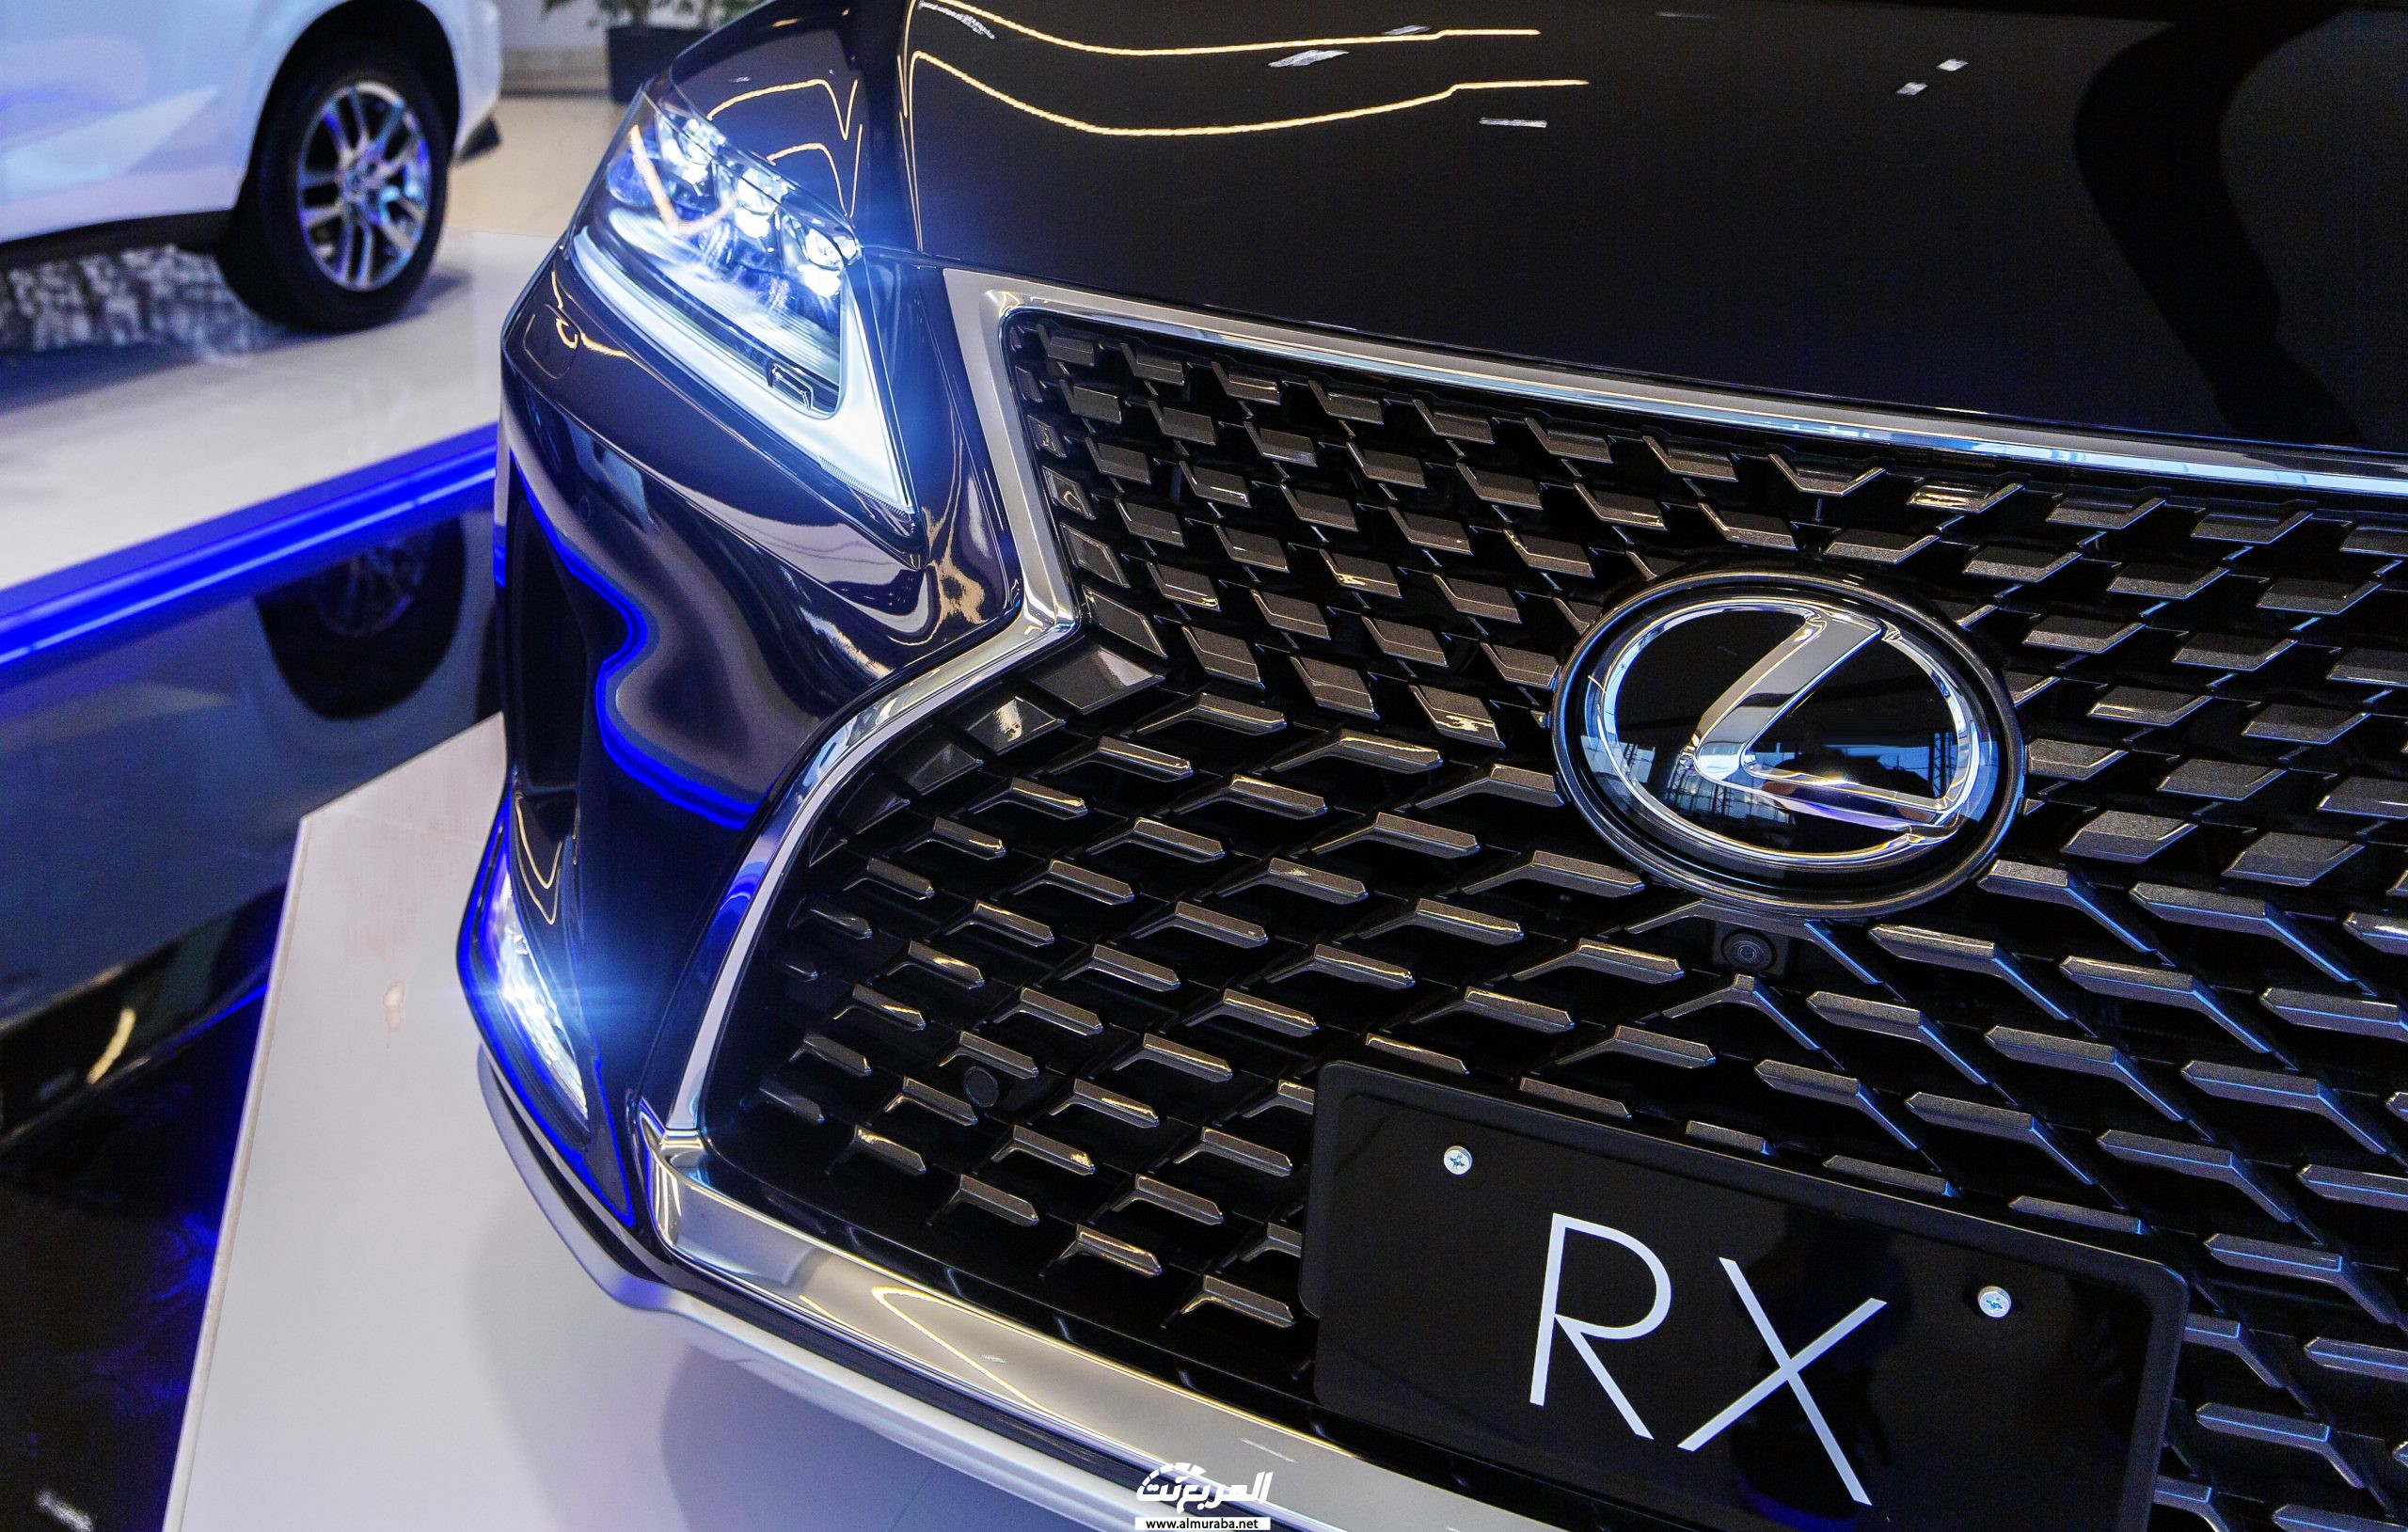 صور لكزس ار اكس 2020 في جلسة تصوير خاصة Lexus RX 60